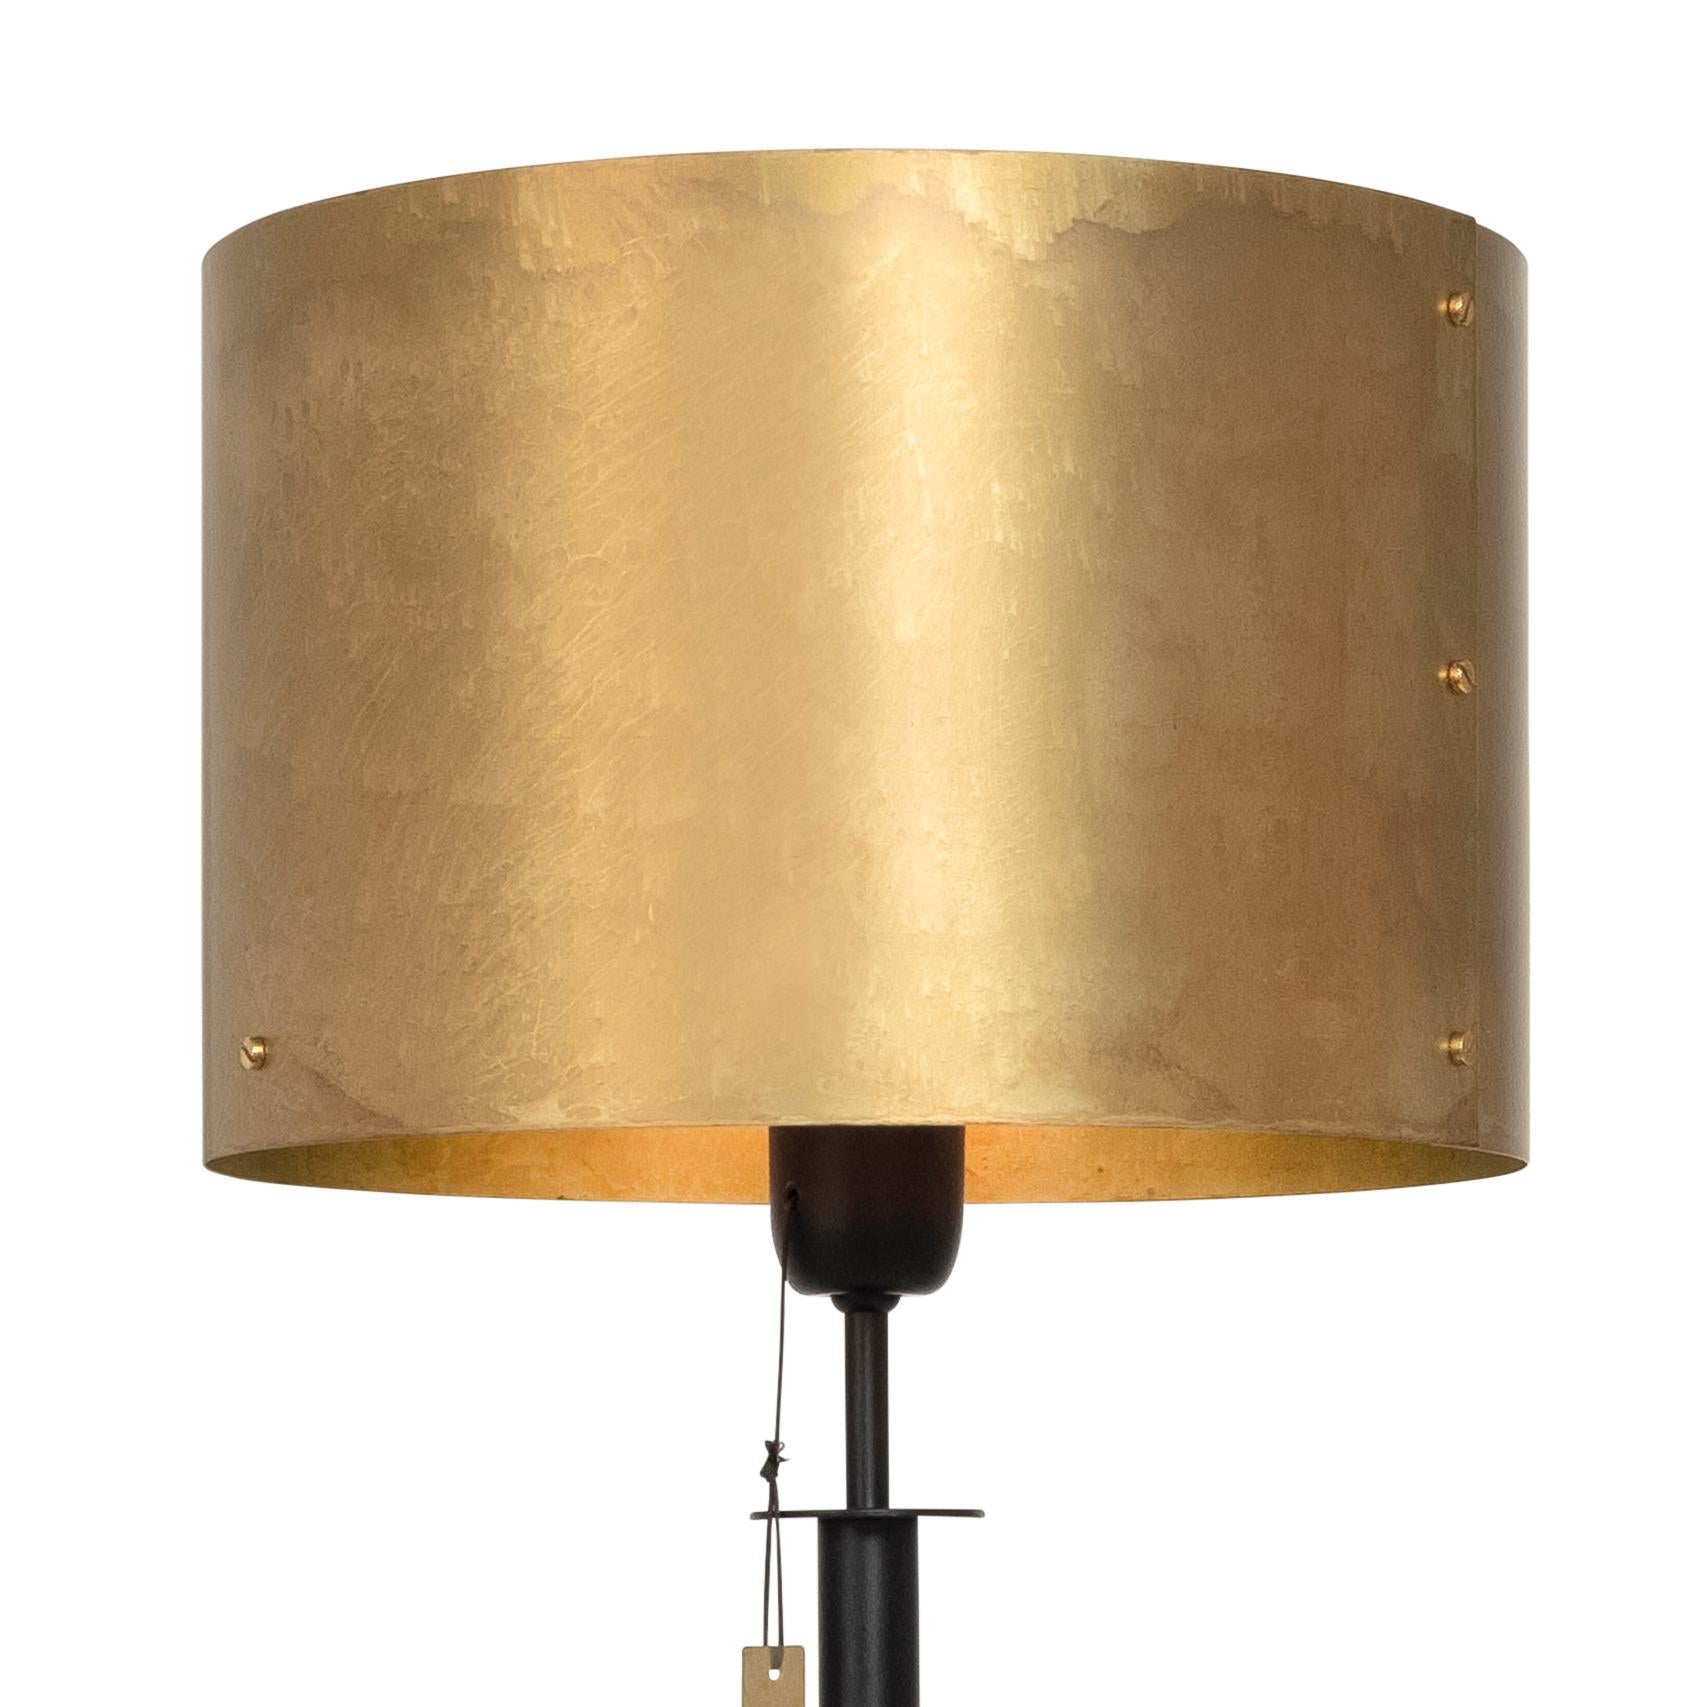 Modèle de lampe svep lampe de table conçue par Konsthantverk et fabriquée par eux-mêmes.

La production des lampes, des appliques et des lampadaires est réalisée de manière artisanale avec les mêmes matériaux et techniques que les premiers